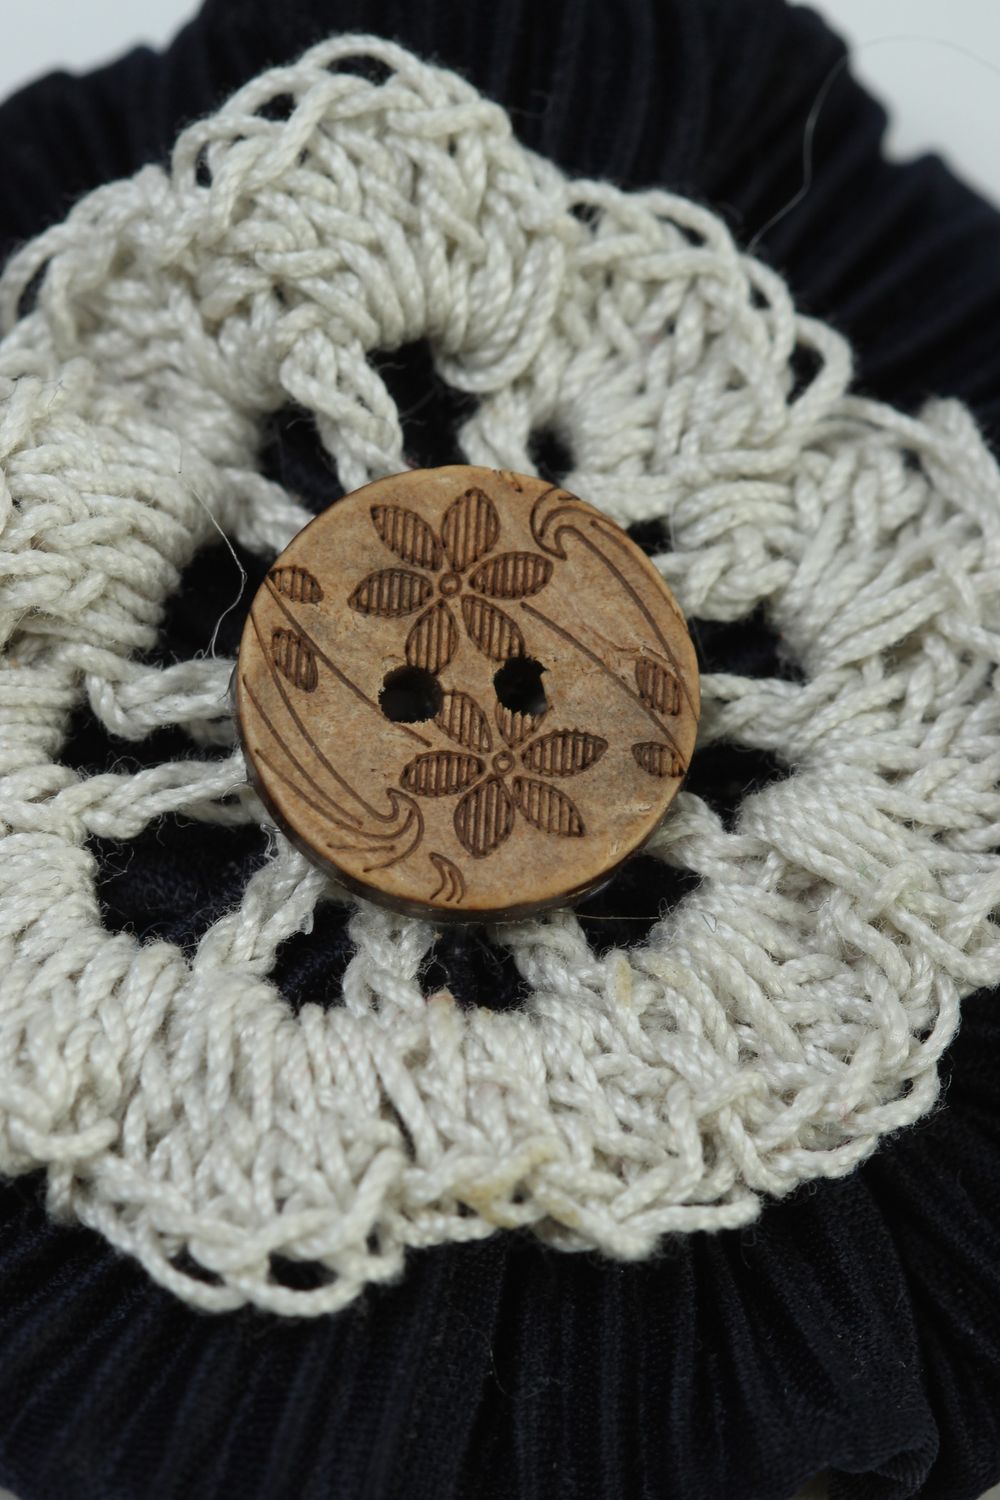 Handmade jewelry supplies crocheted flower crochet flower hair clips supplies photo 4